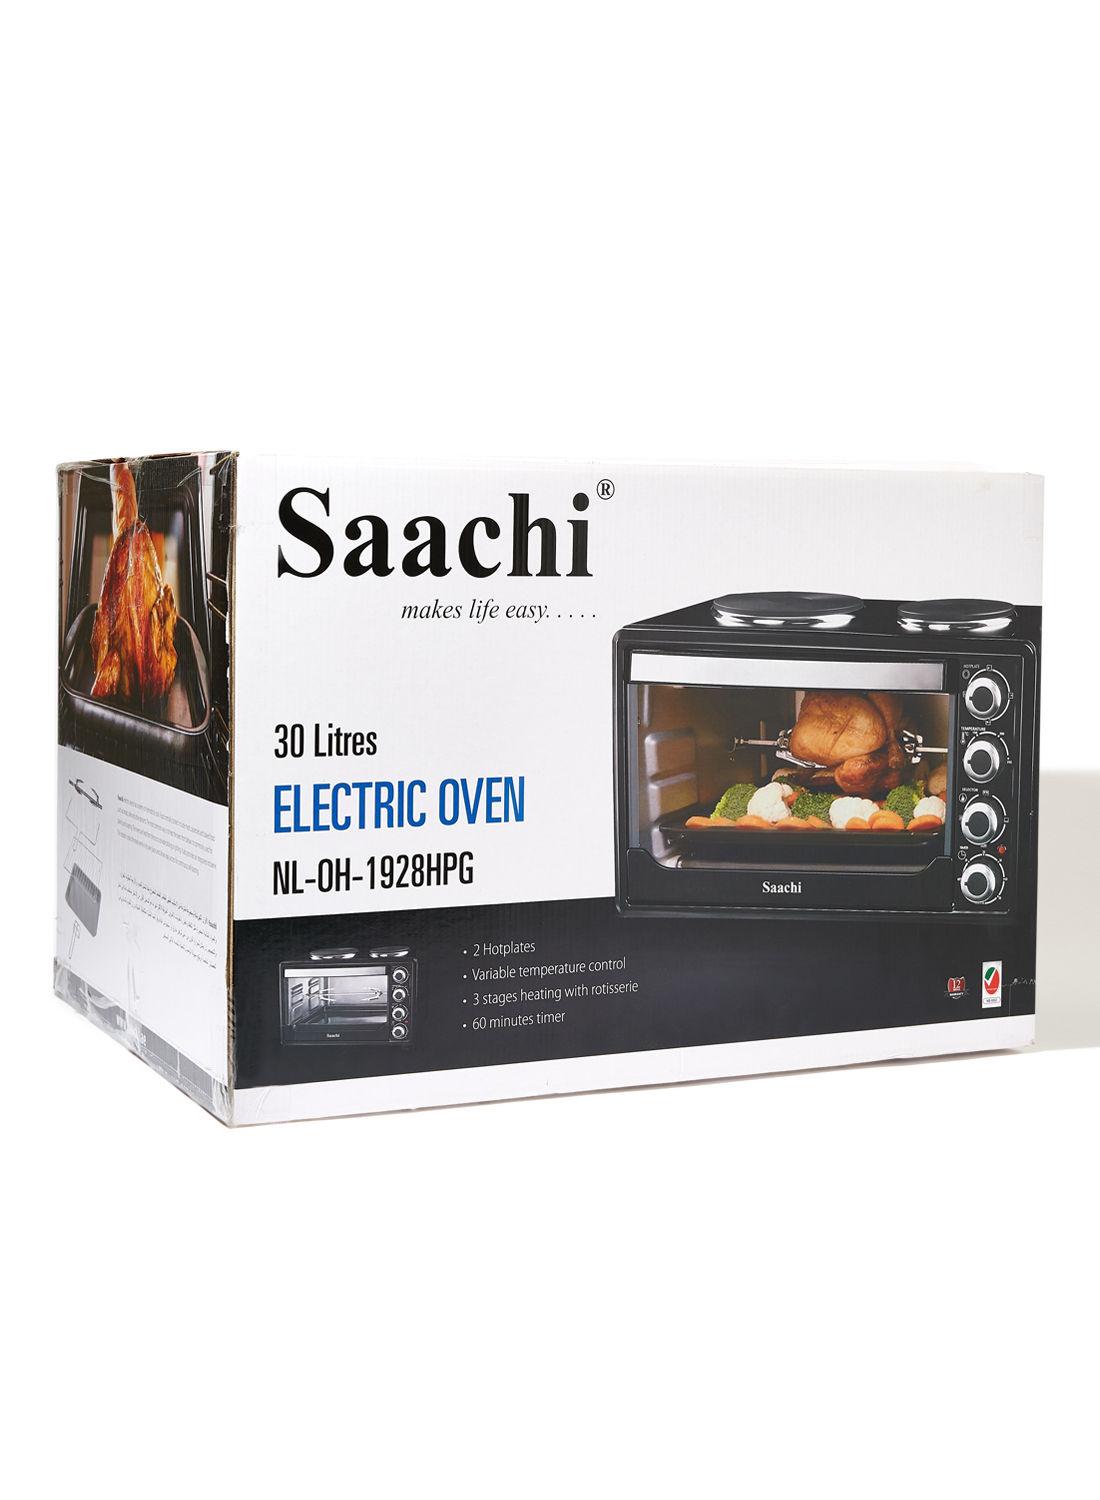 فرن كهربائي مزود بألواح تسخين Saachi - Electric Oven With Hotplates  - cG9zdDoyNTA3MDA=